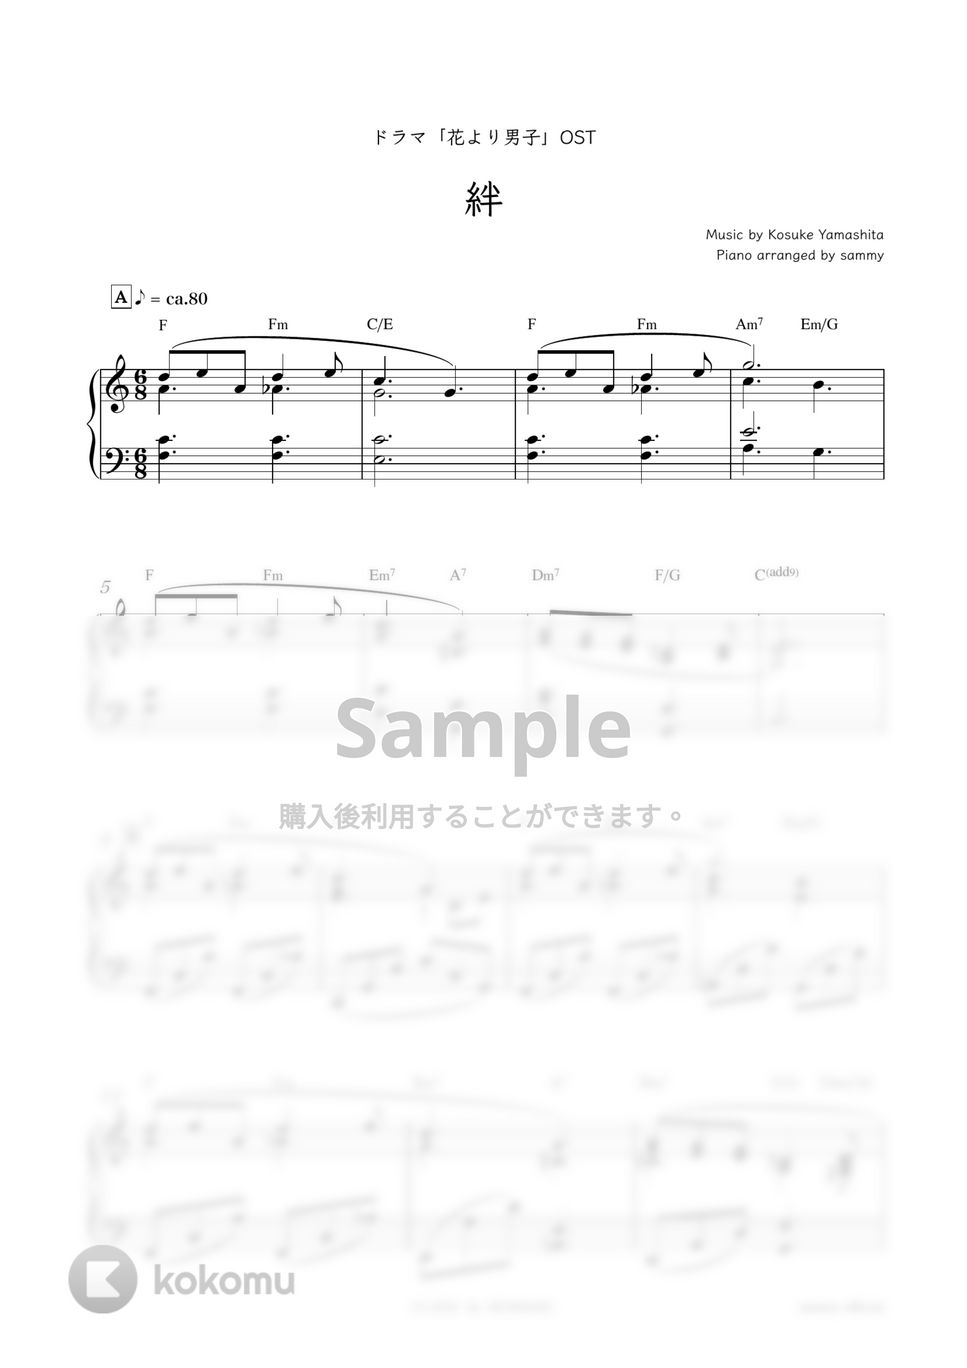 ドラマ『花より男子』OST - 絆 by sammy